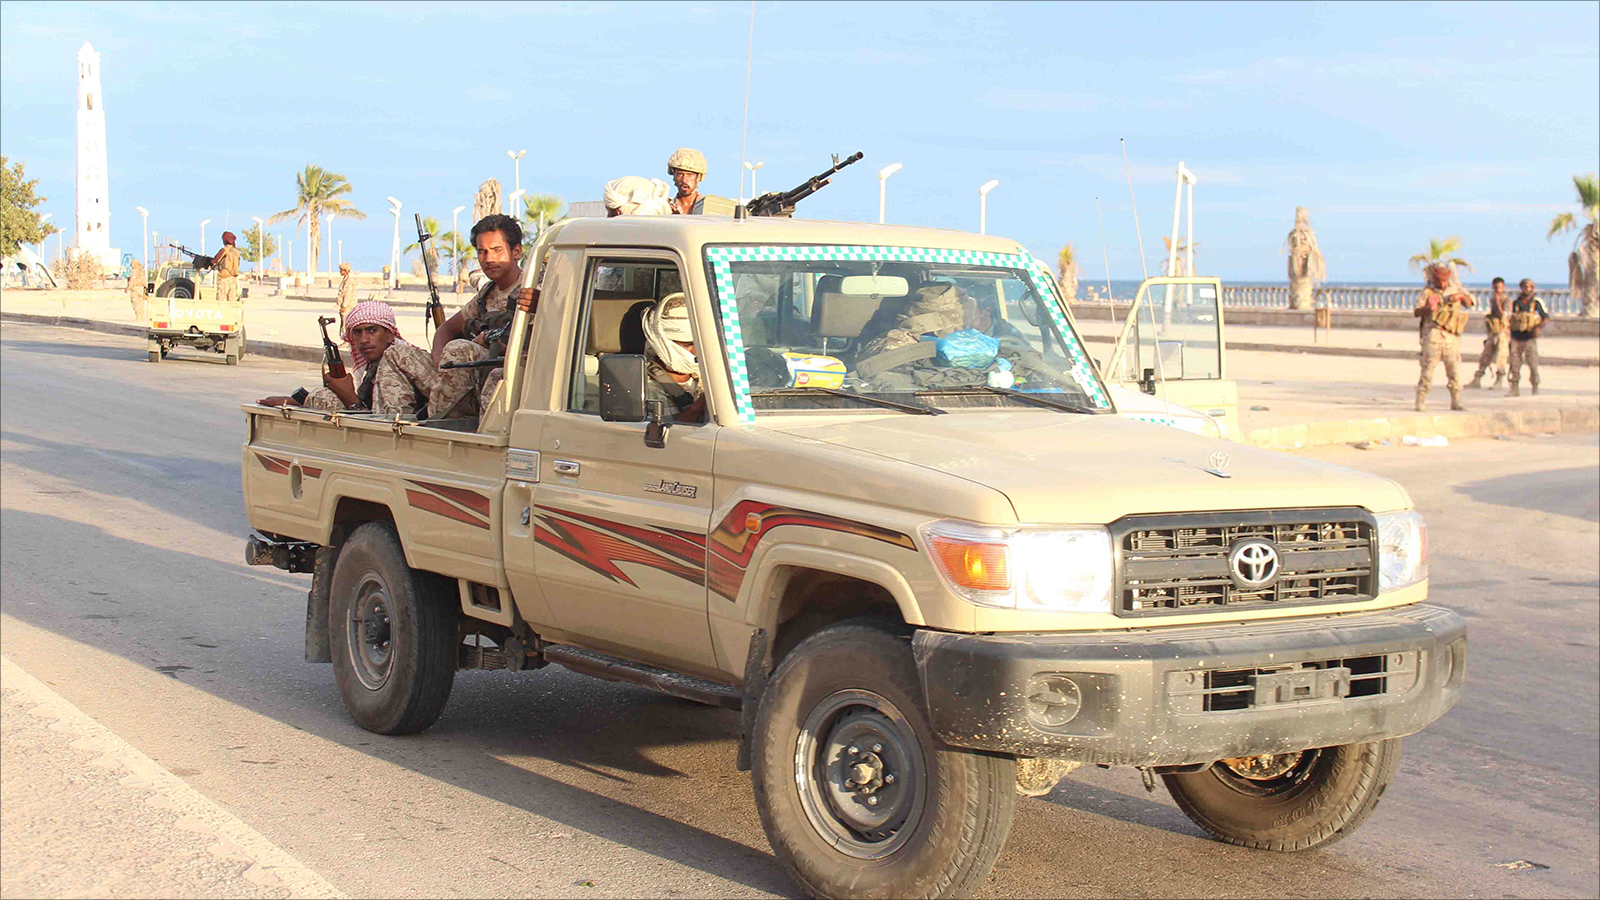 ‪لقوات الموالية للحكومة اليمنية استعادت السيطرة على مدينة المكلا قبل ثلاثة أشهر‬ (الجزيرة)